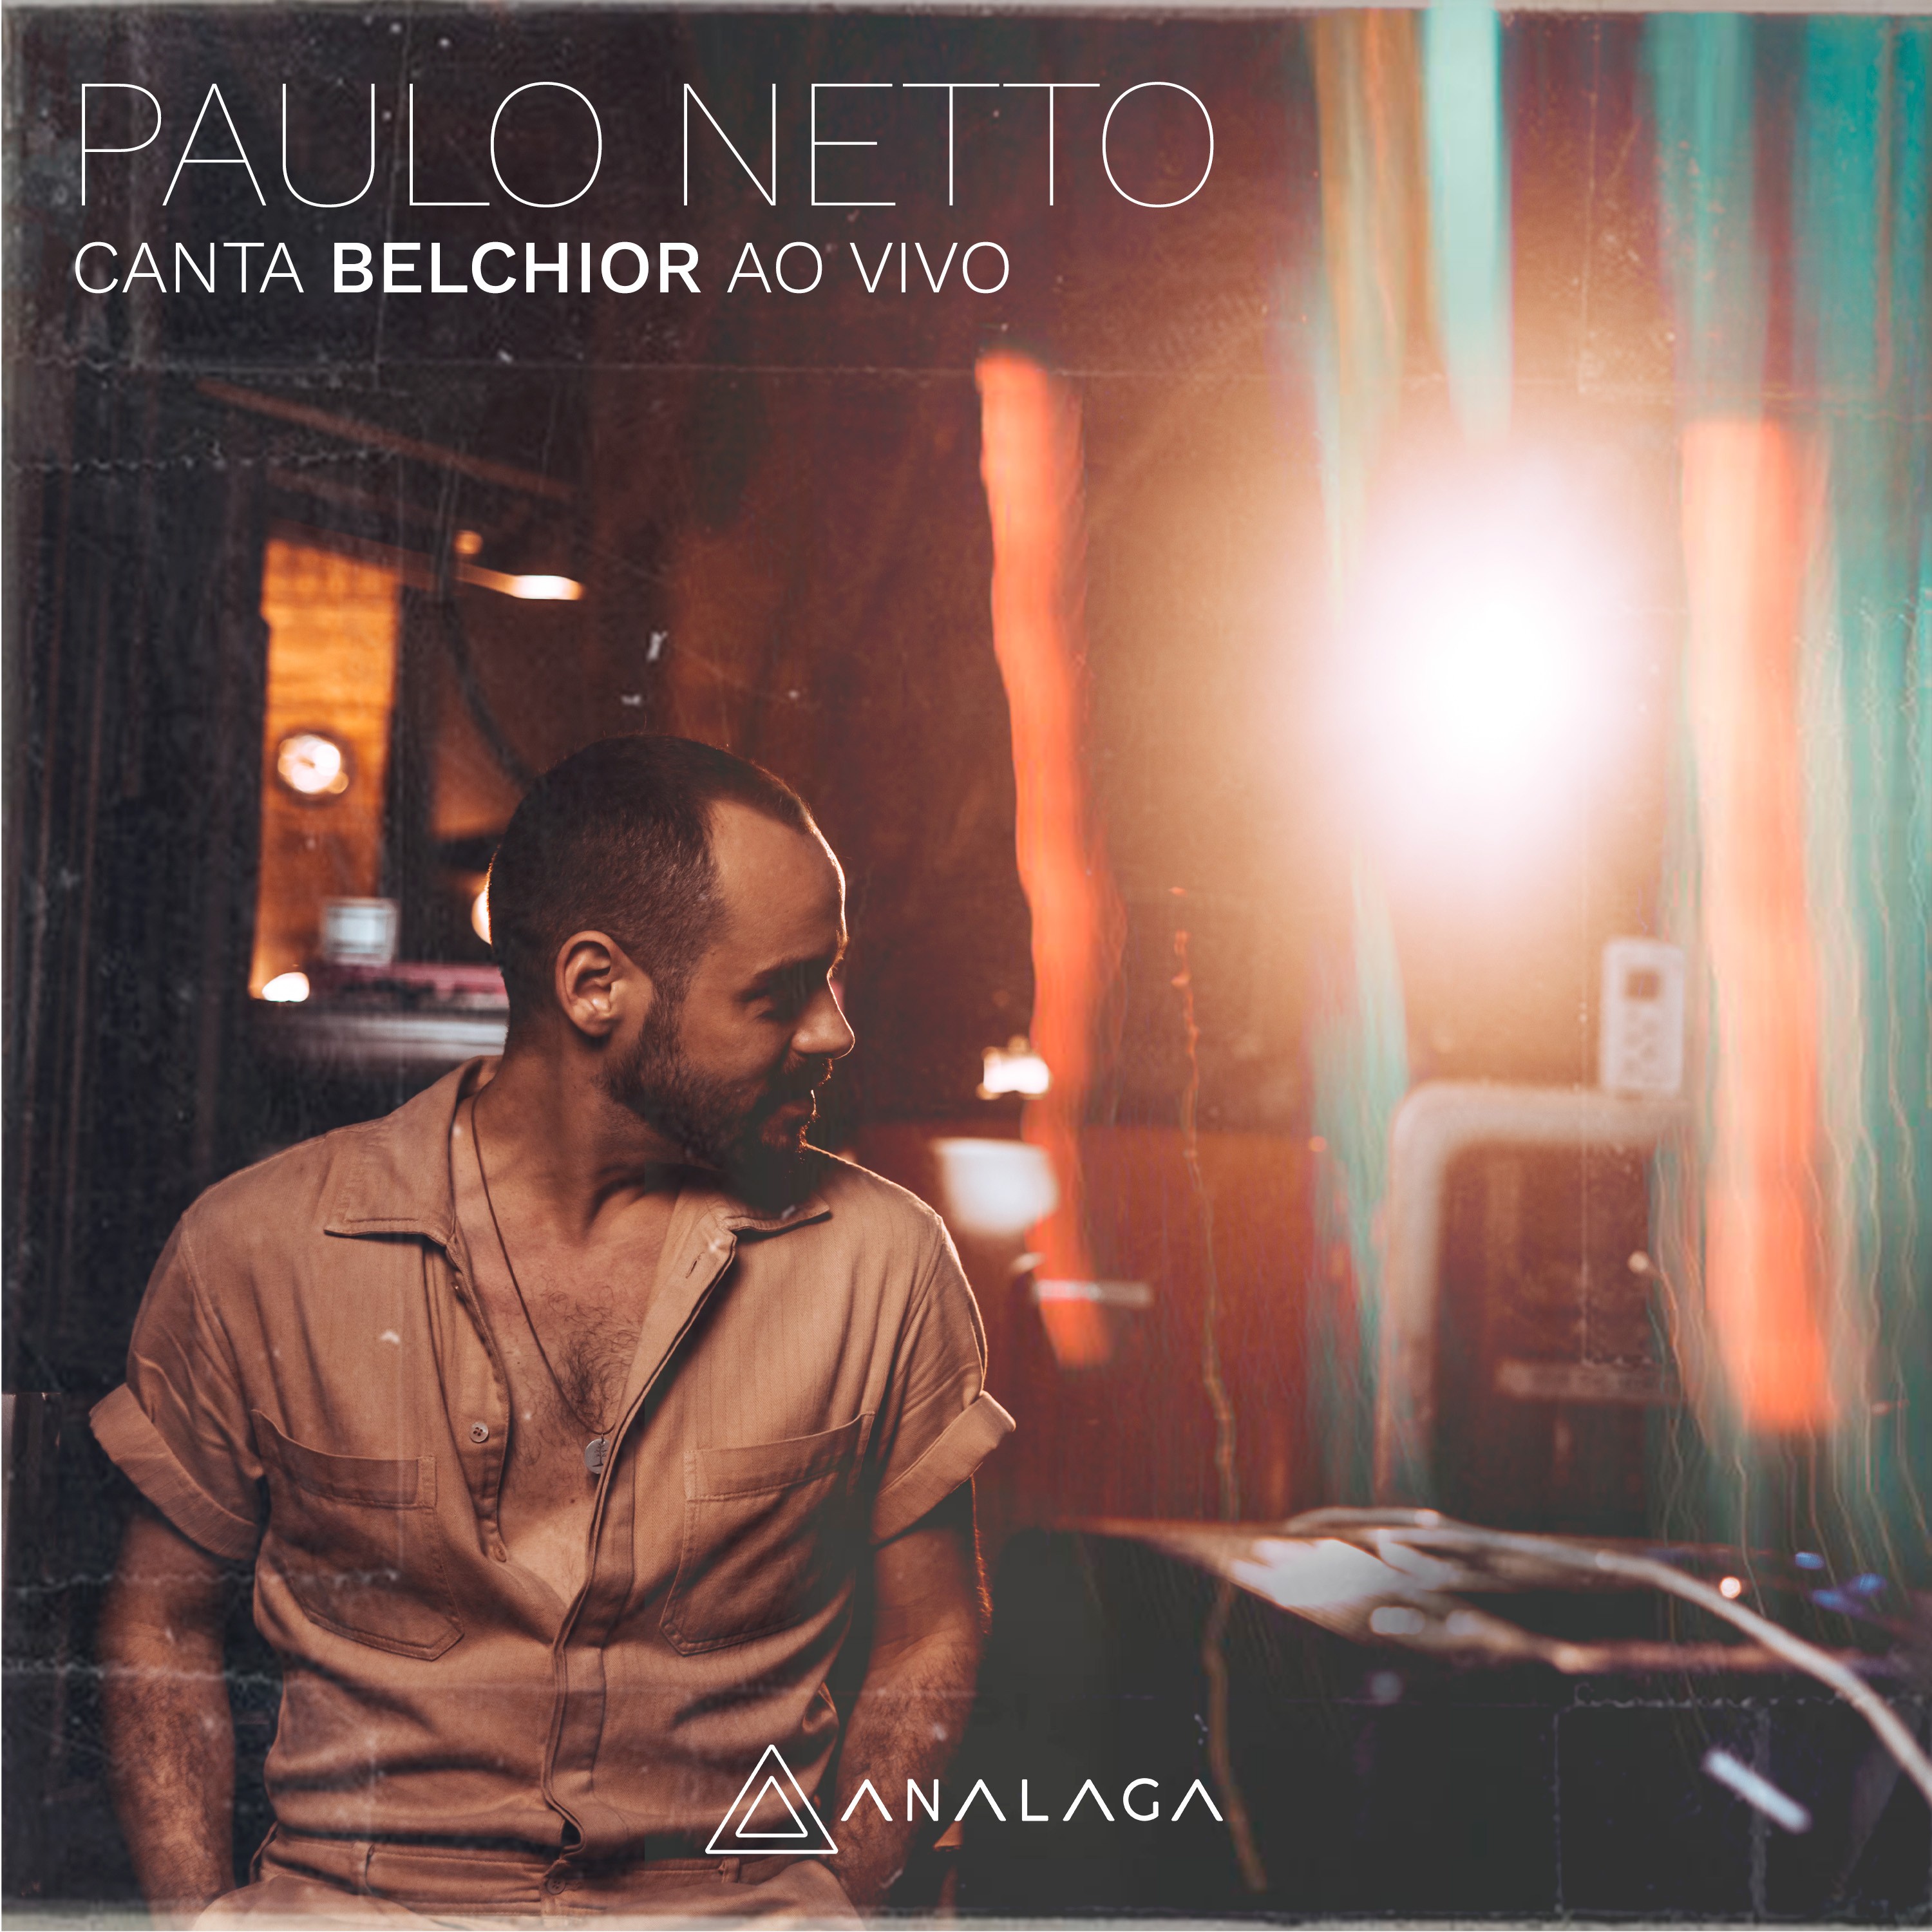 Paulo Netto lança álbum com registro do show em que canta Belchior há dez anos